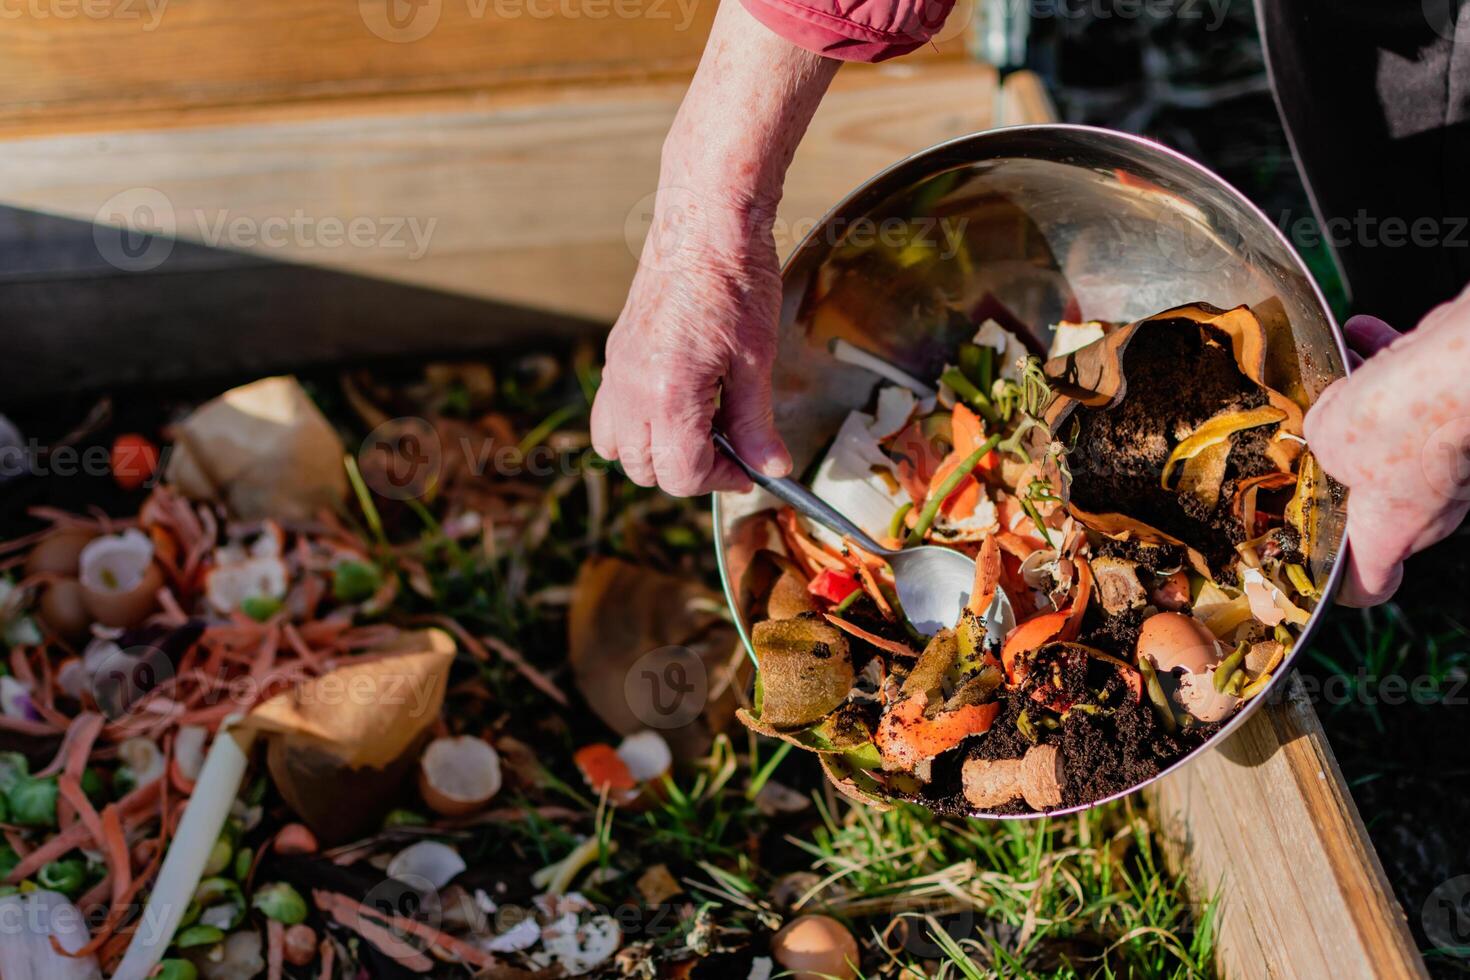 Person Wer stellen im ein Komposter etwas Küche Abfall mögen Gemüse, Früchte, Eierschale, Kaffee Gründe im bestellen zu Sortieren und machen bio Dünger foto